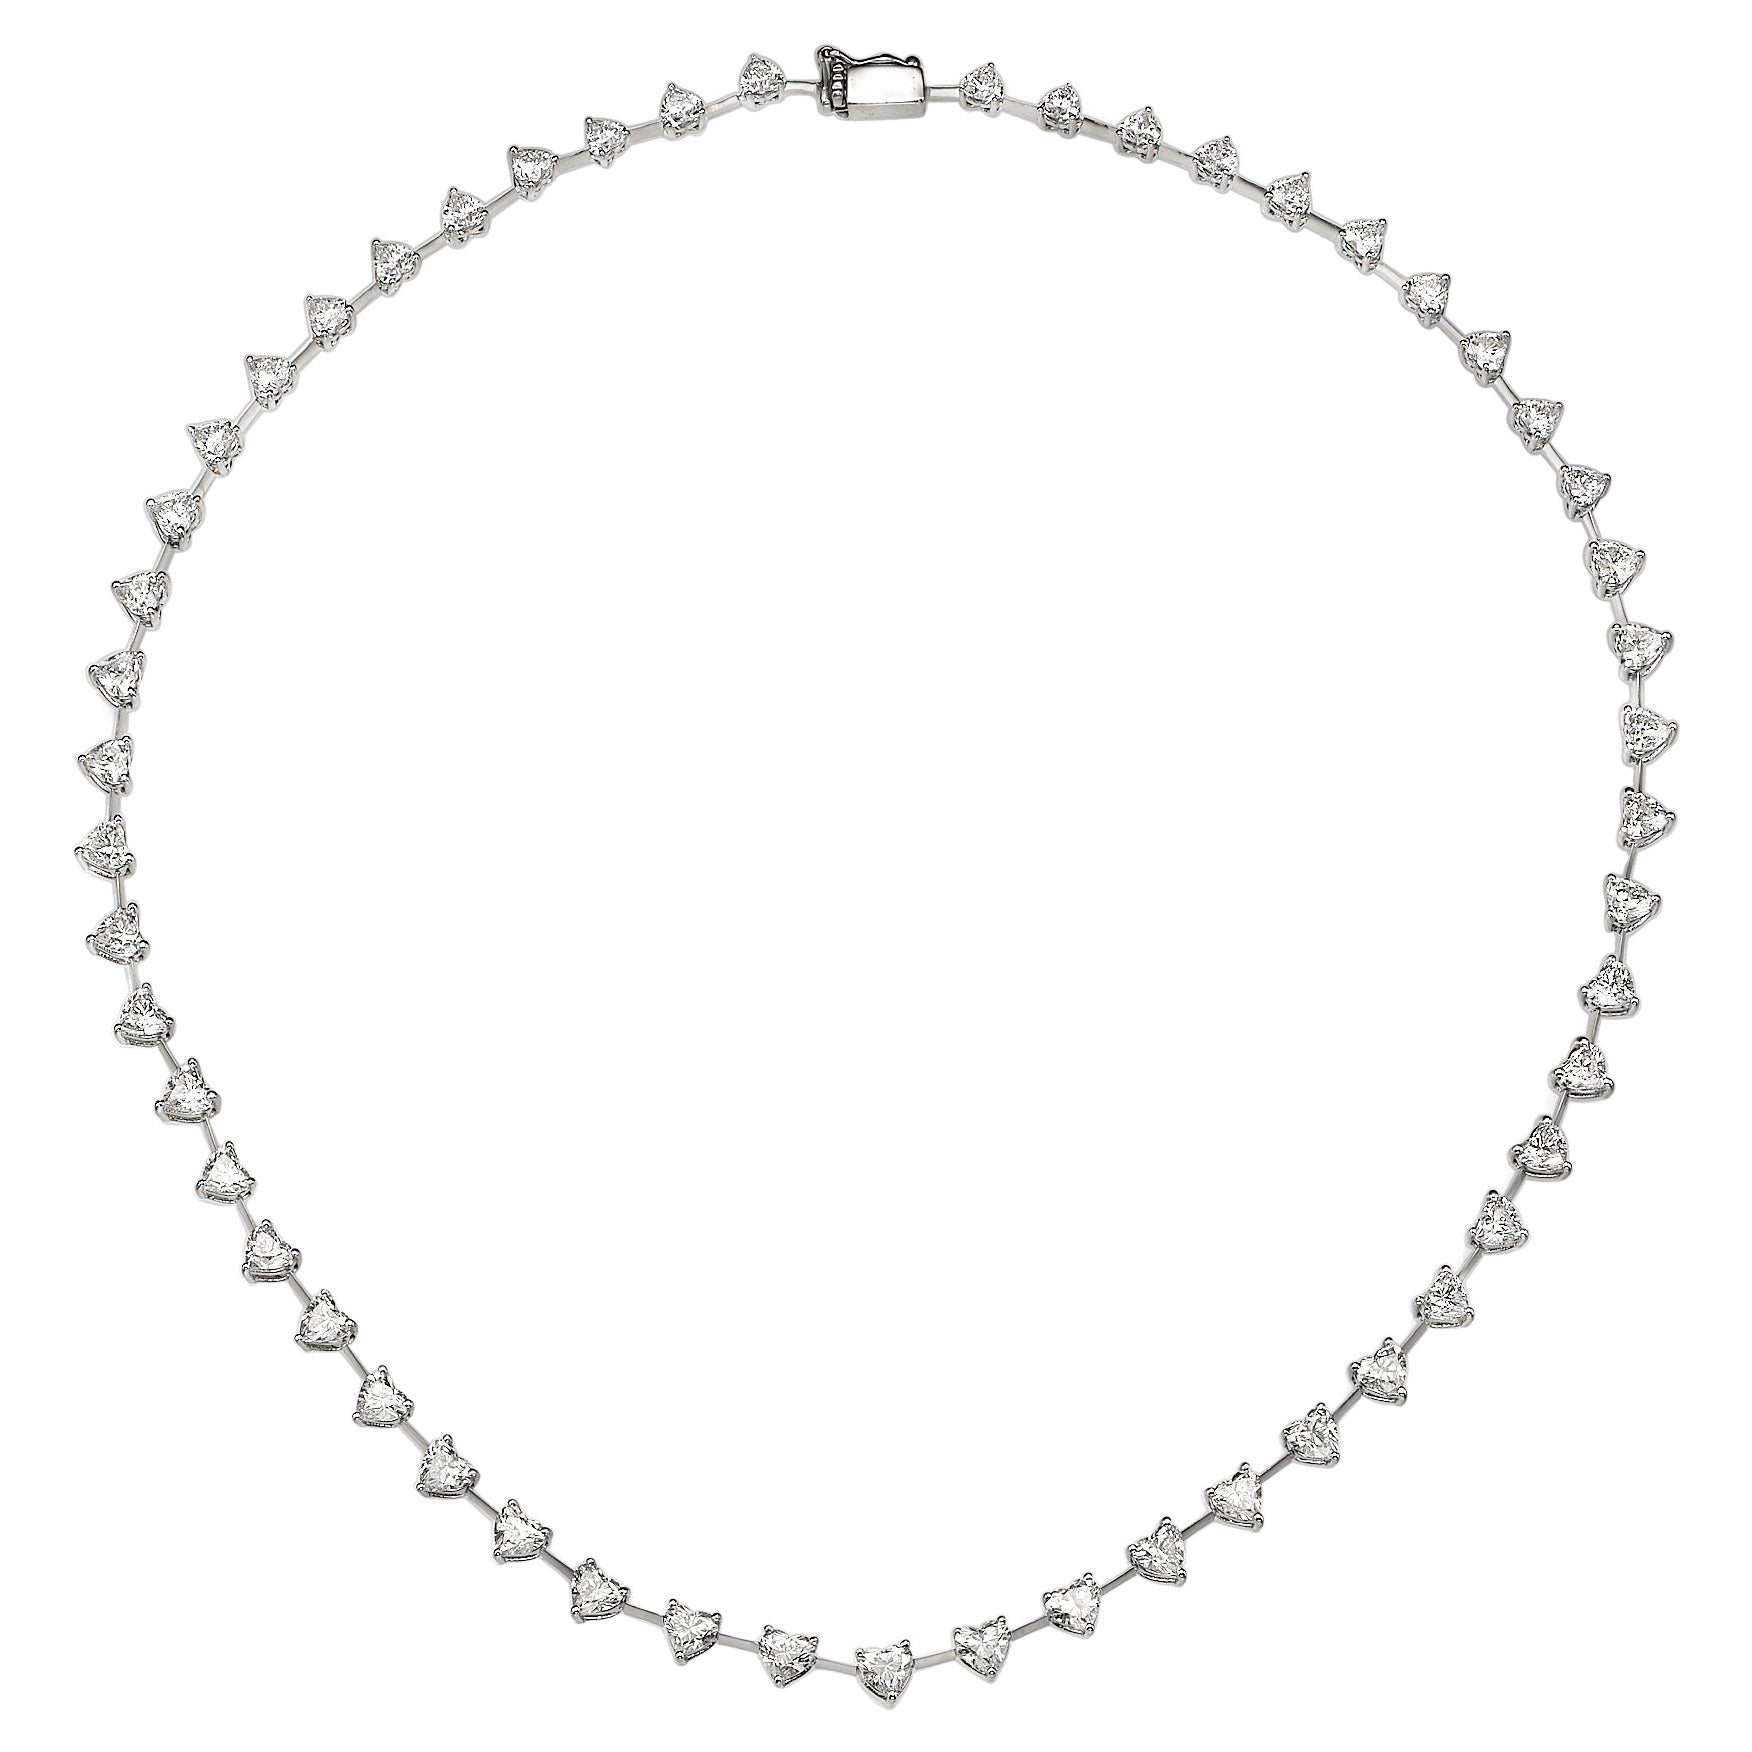 12.16 Carat Heart Shape Diamond Necklace For Sale